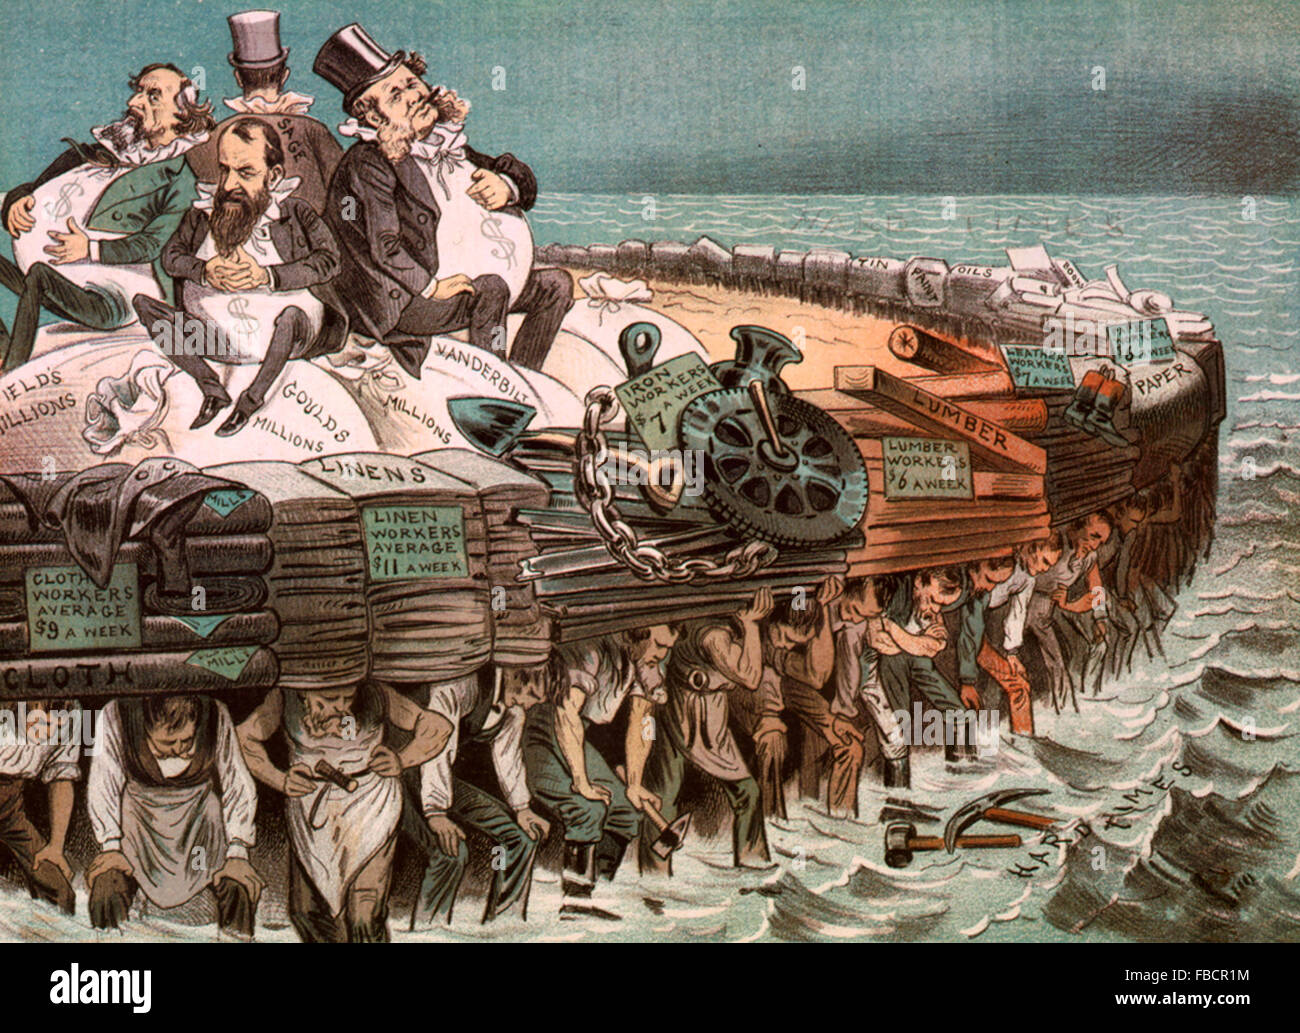 Protektoren unserer Industrie - politische Karikatur zeigt Cyrus Field, Jay Gould, Cornelius Vanderbilt und Russell Sage, sitzen auf Taschen von "Millionen", großes Floß und von Arbeitern verschiedener Berufe durchgeführt werden. Stockfoto